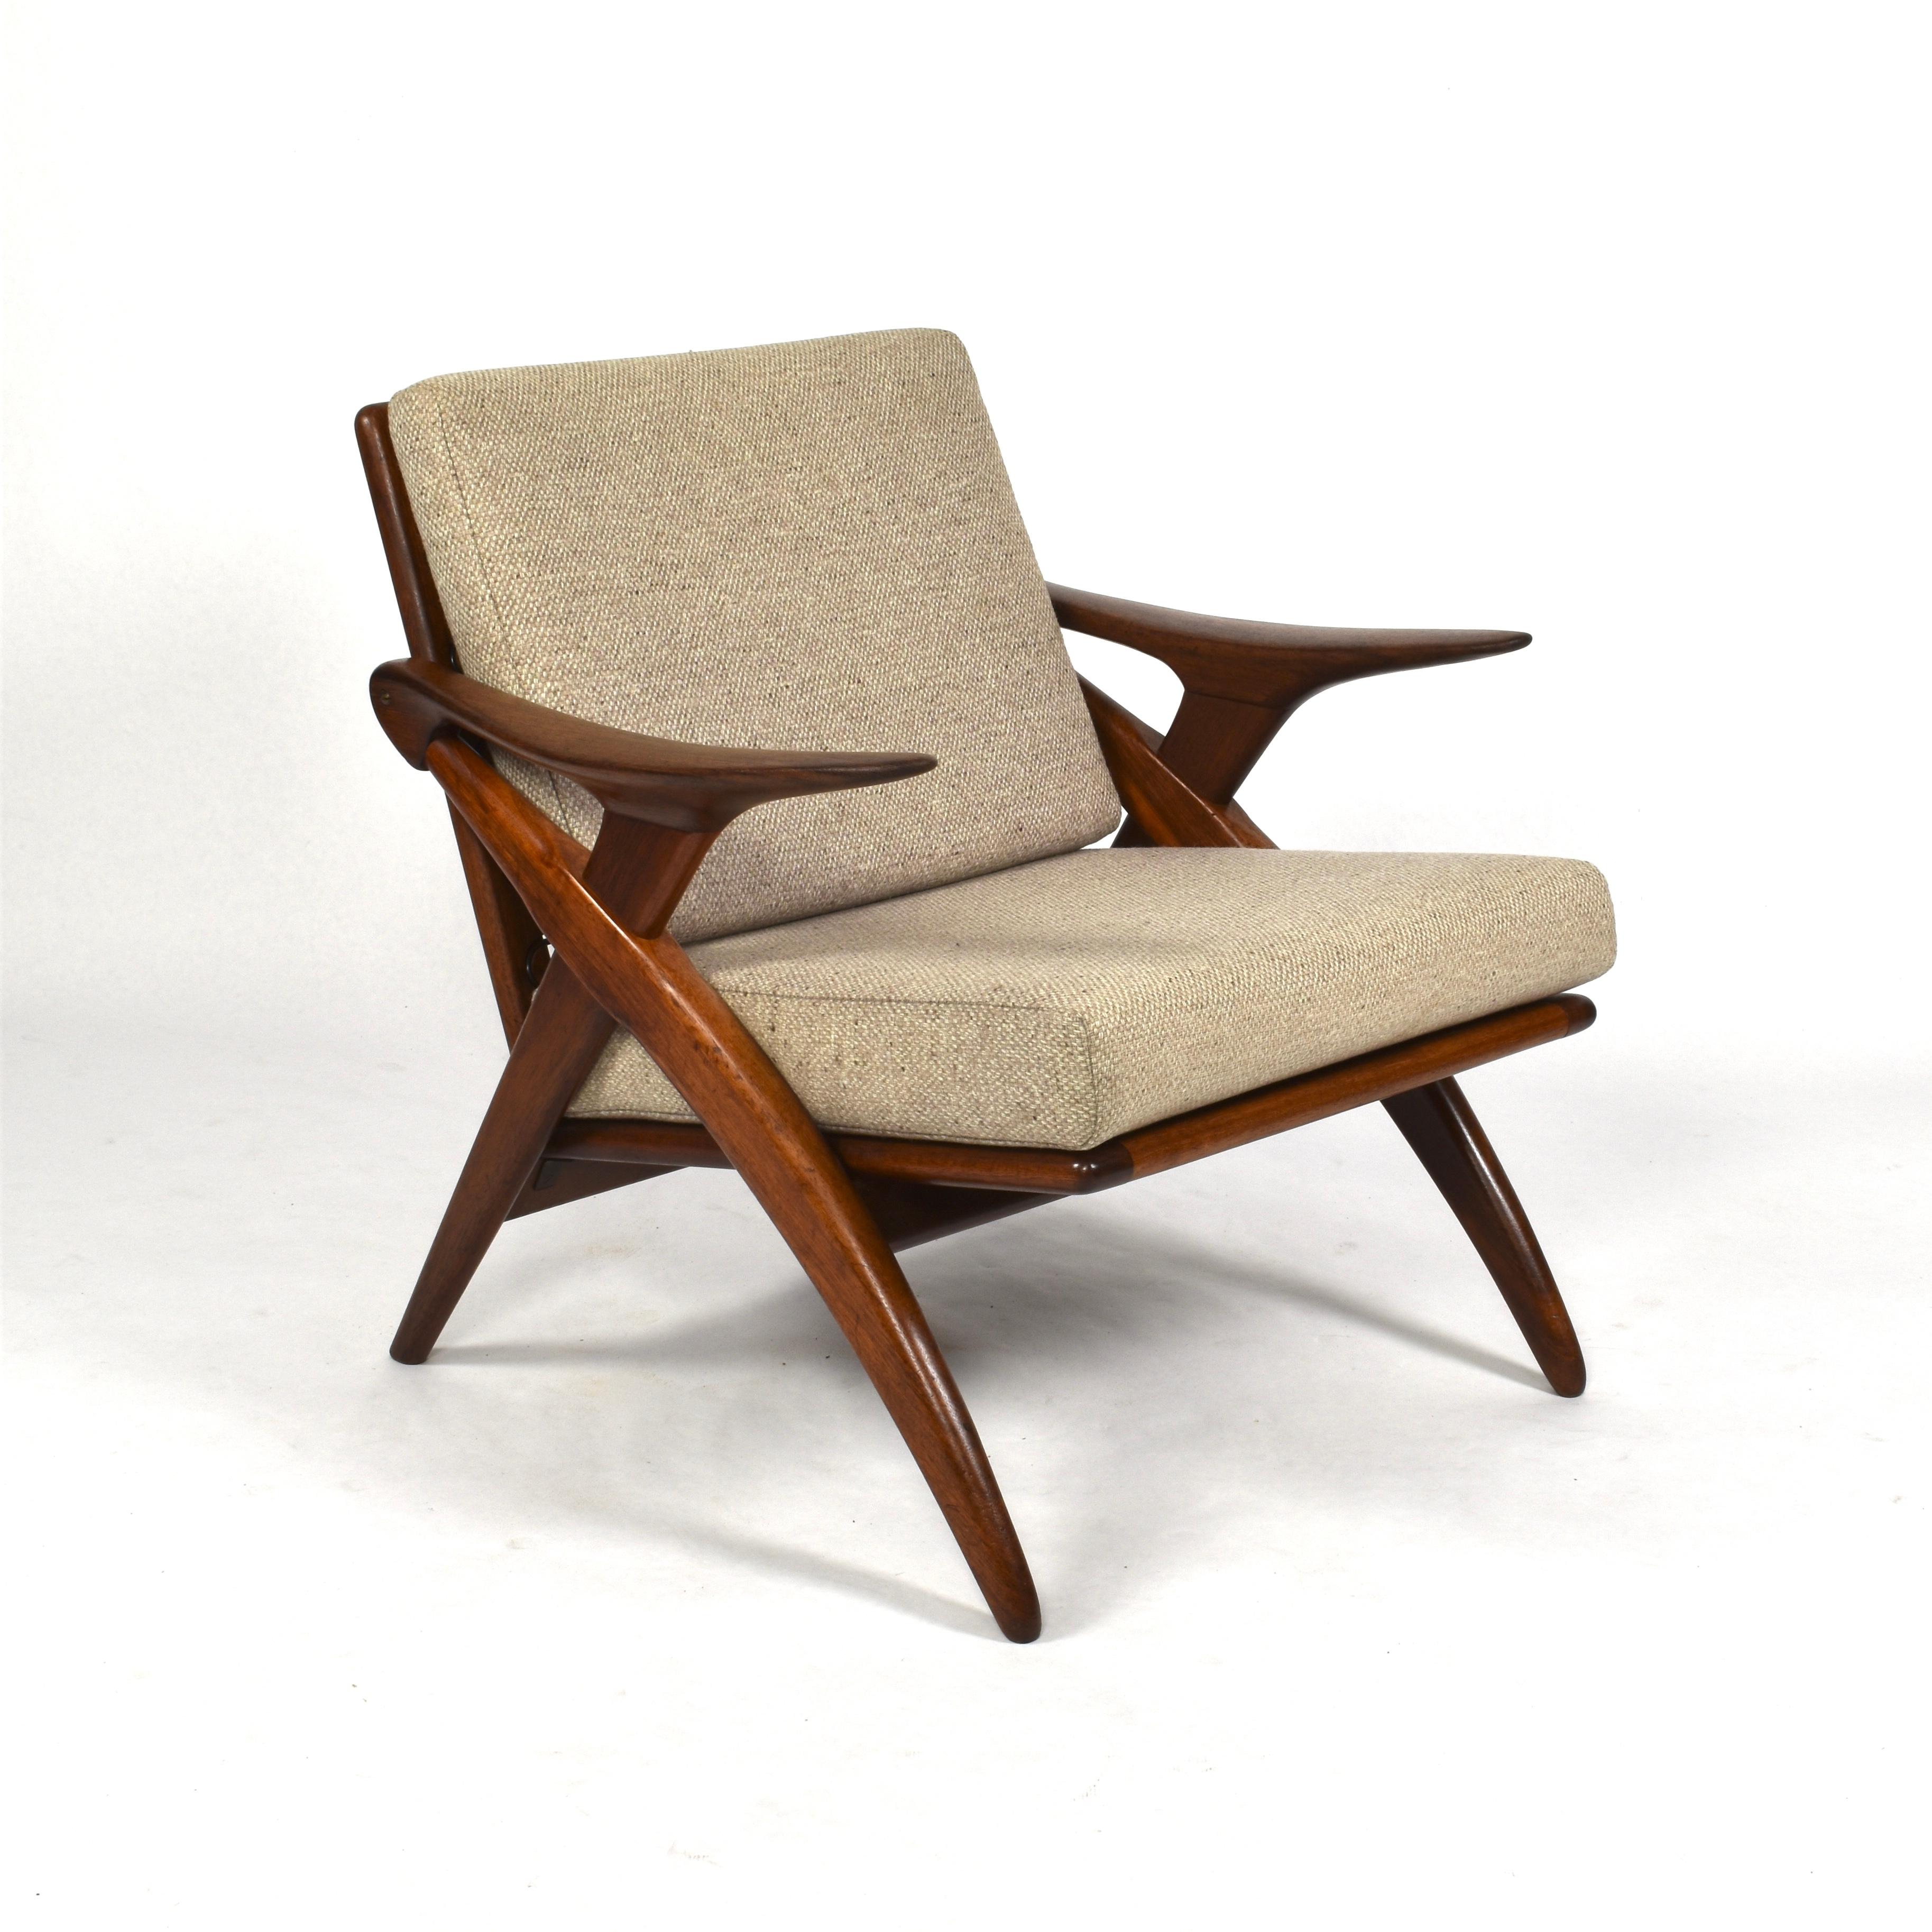 Mid-Century Modern Teak Lounge Chair by De Ster Gelderland, Netherlands, circa 1960